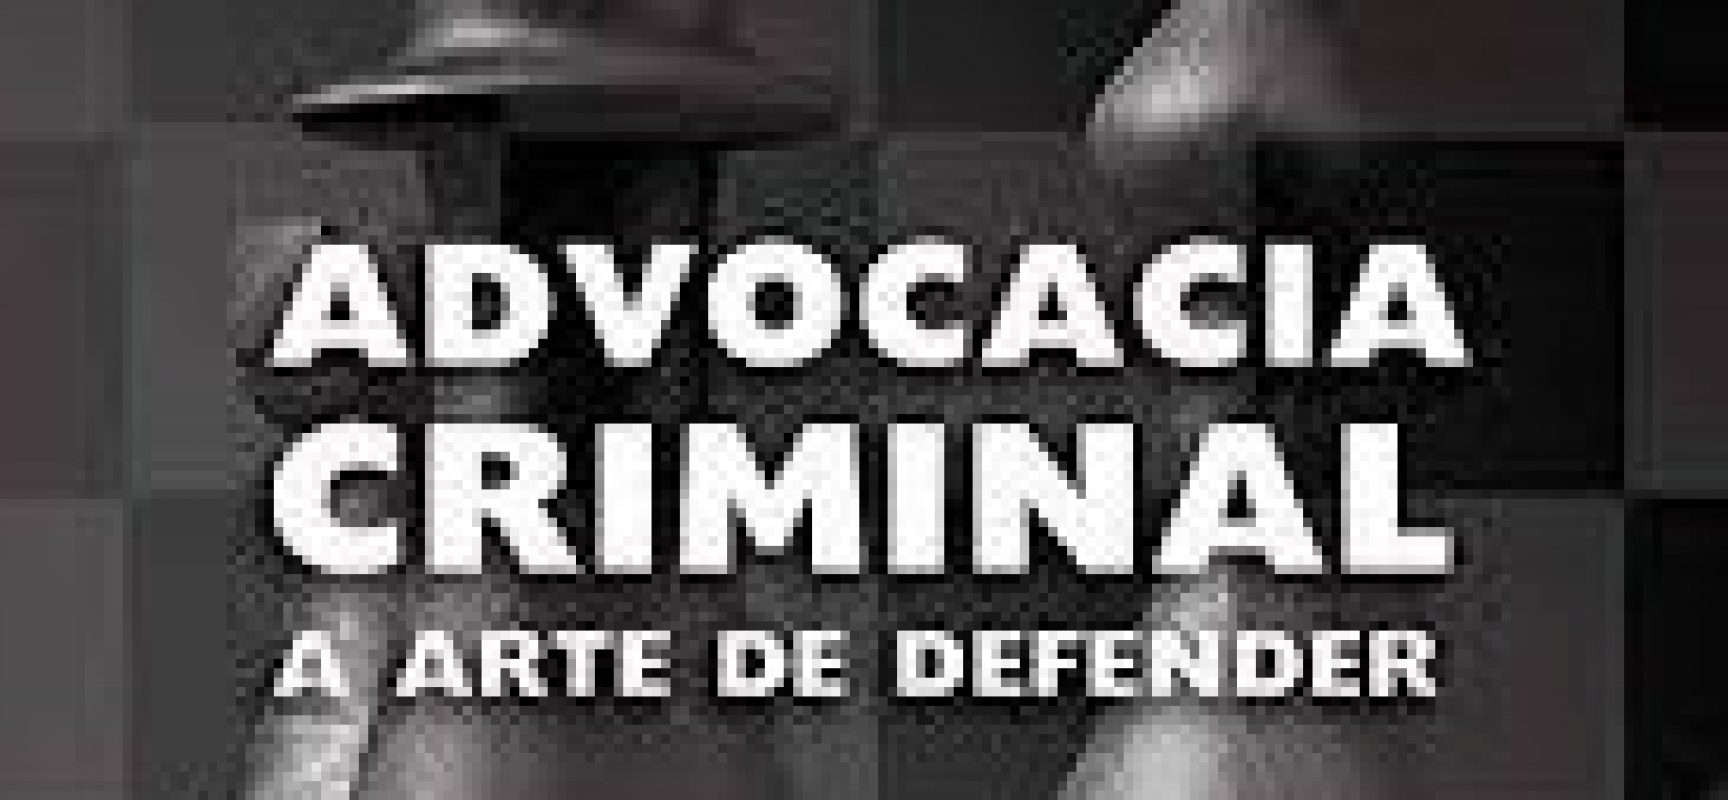 DR. RODRIGO NABUCO: Advocacia criminal em tempos da Covid-19